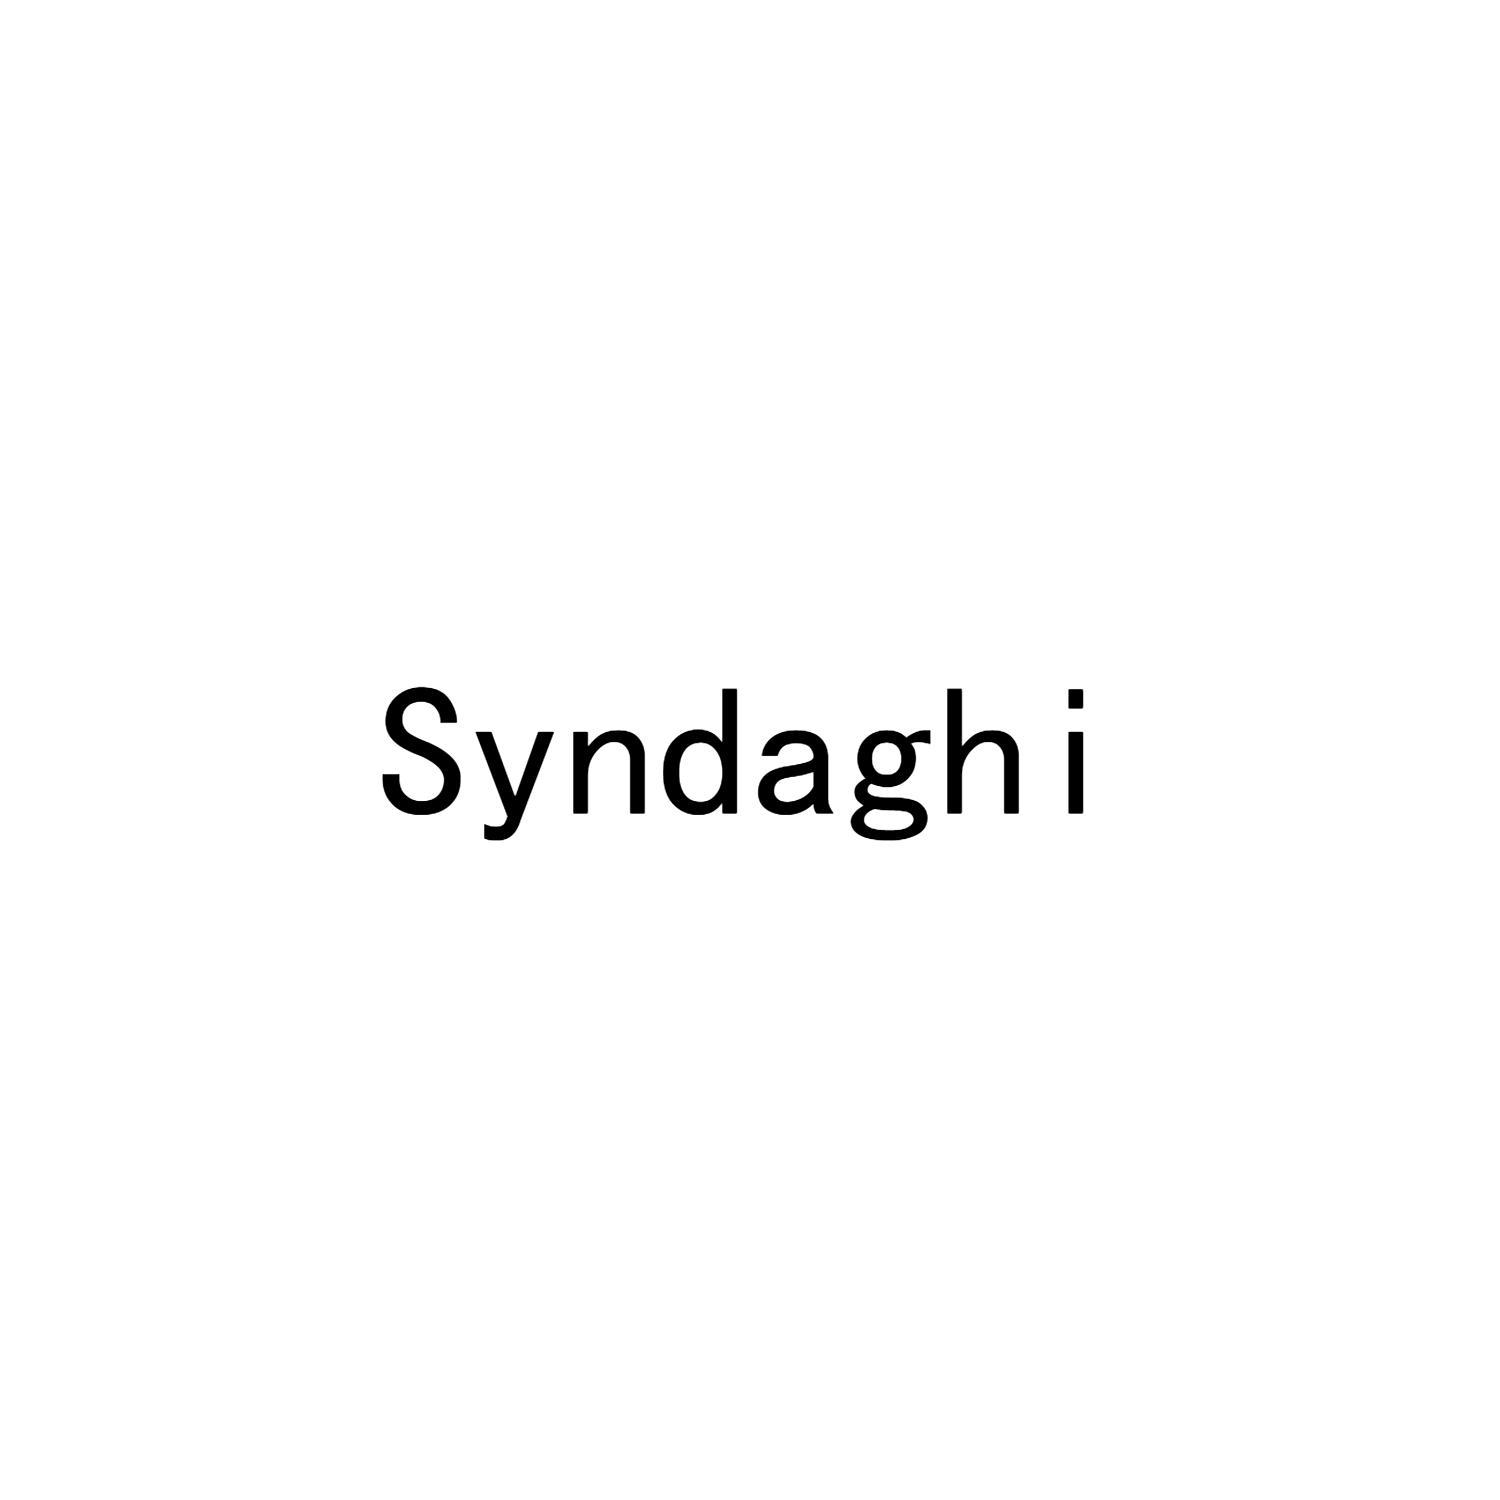 SYNDAGHI